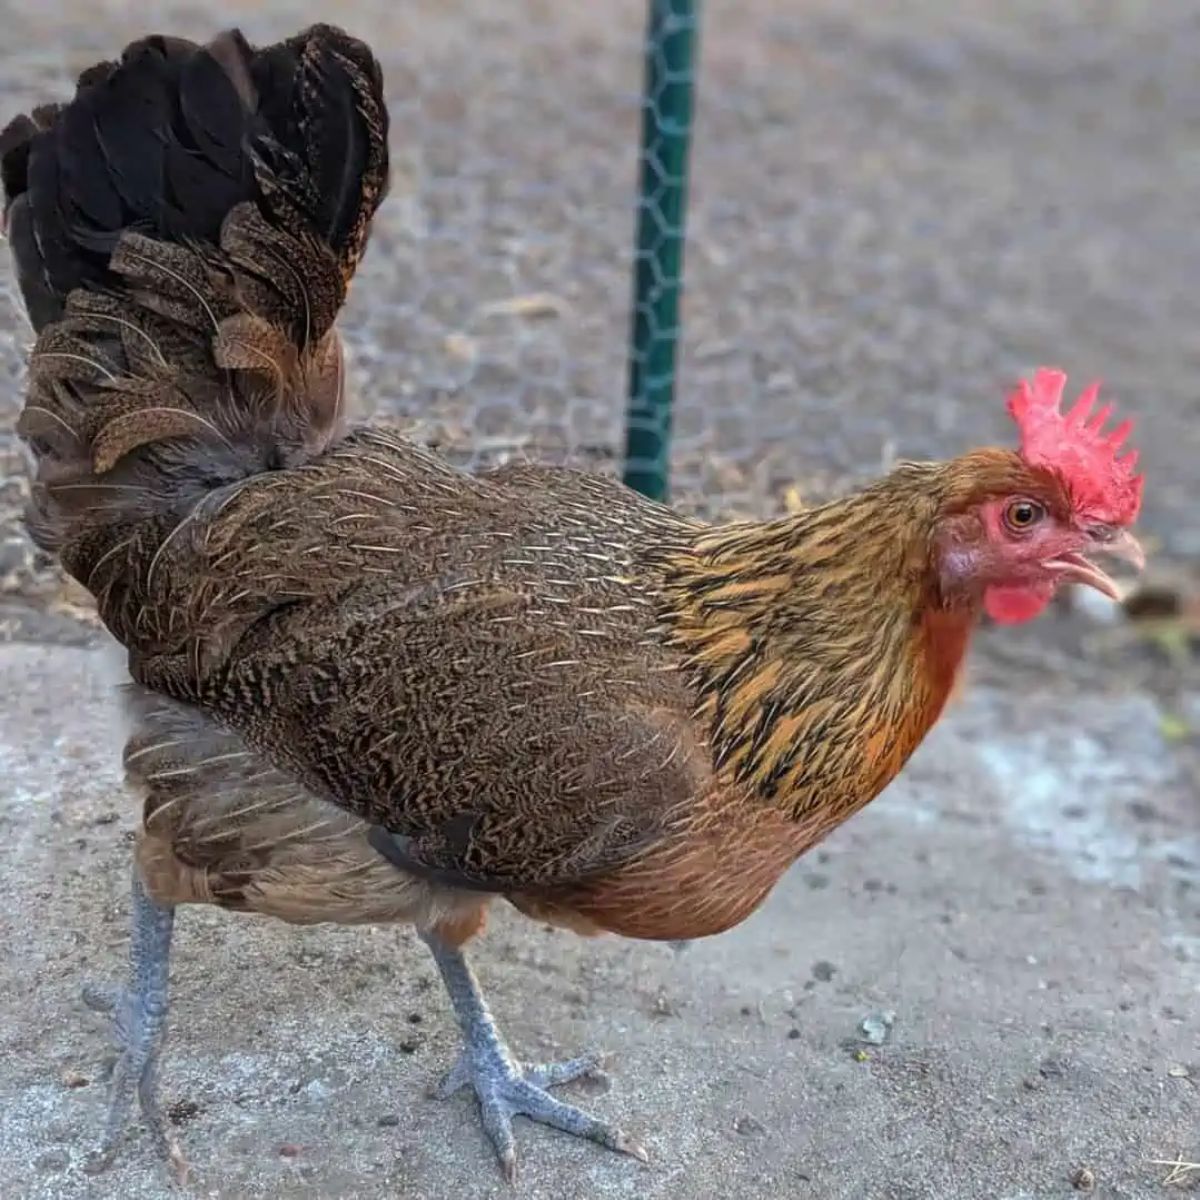 An adorable Penedesenca Chicken in a backyard near a fence.